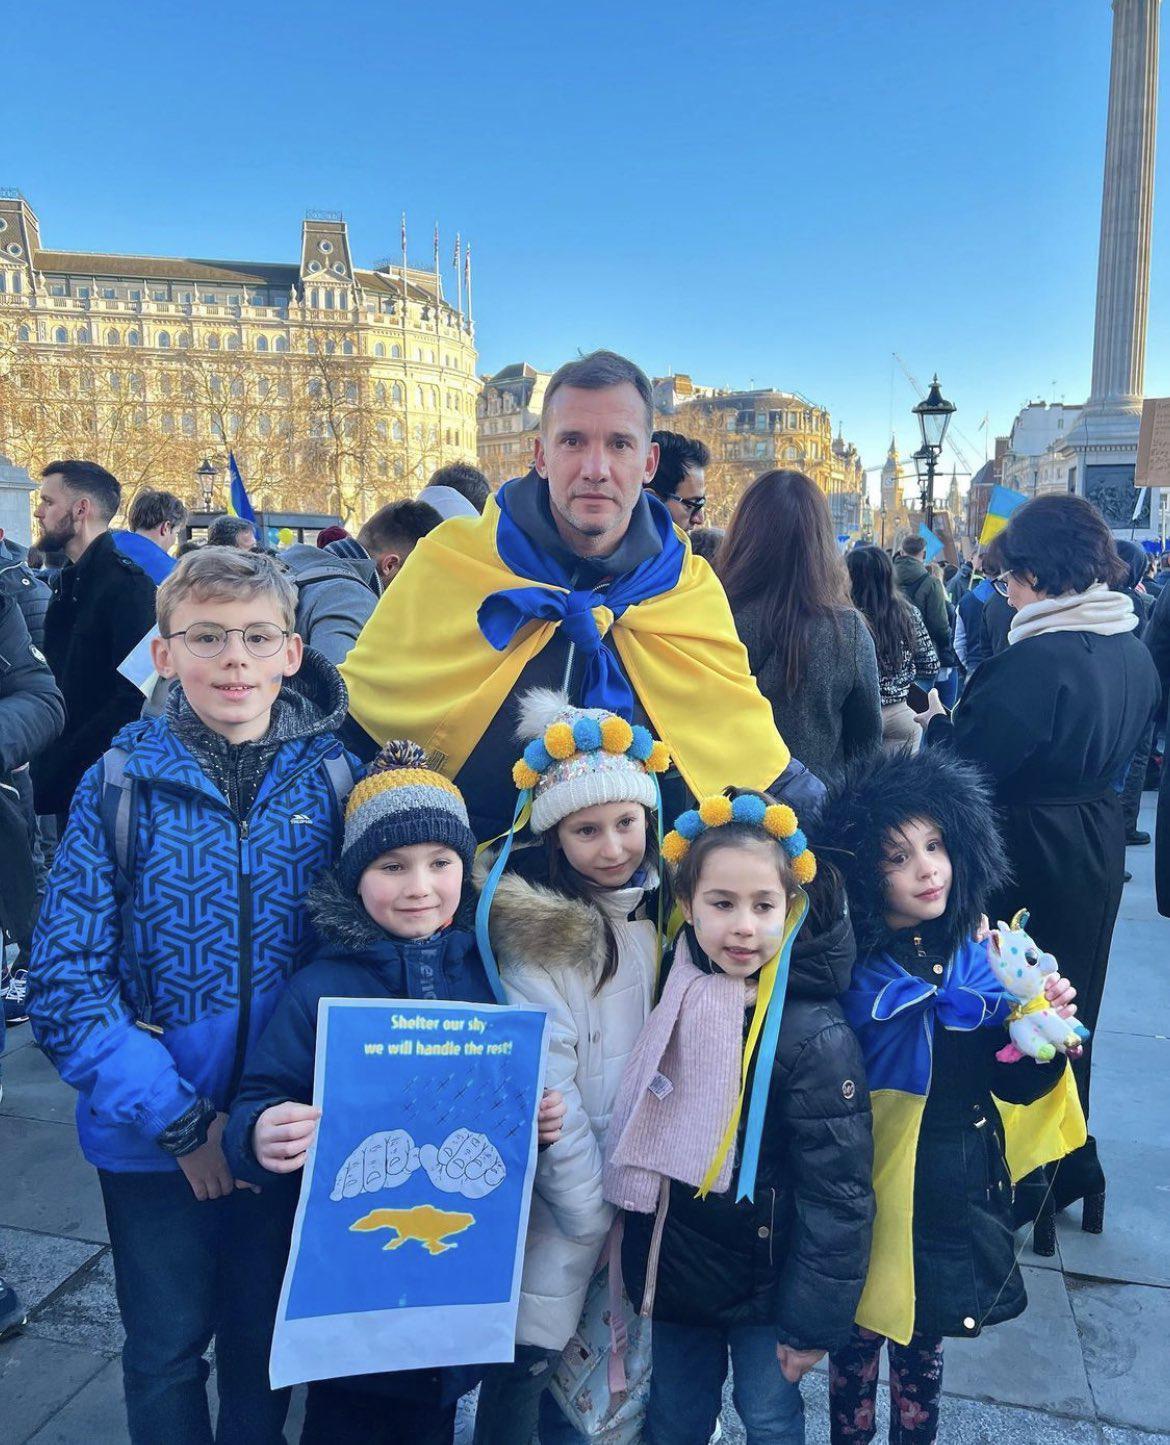 Andriy Shevchenko: Ukraynadaki savaşı durdurun